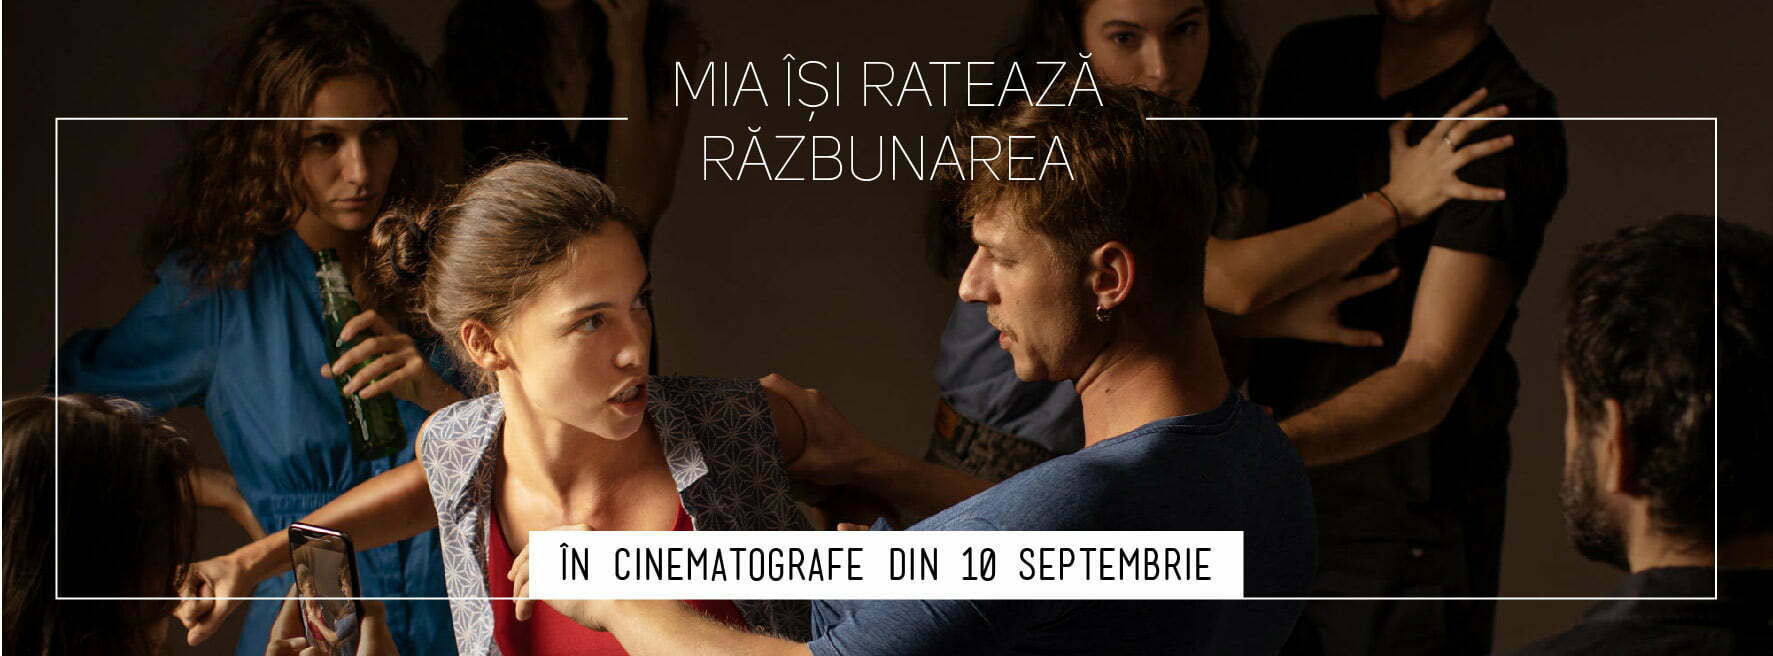 Pe 10 septembrie, filmul „Mia își ratează răzbunarea” intră în cinematografe